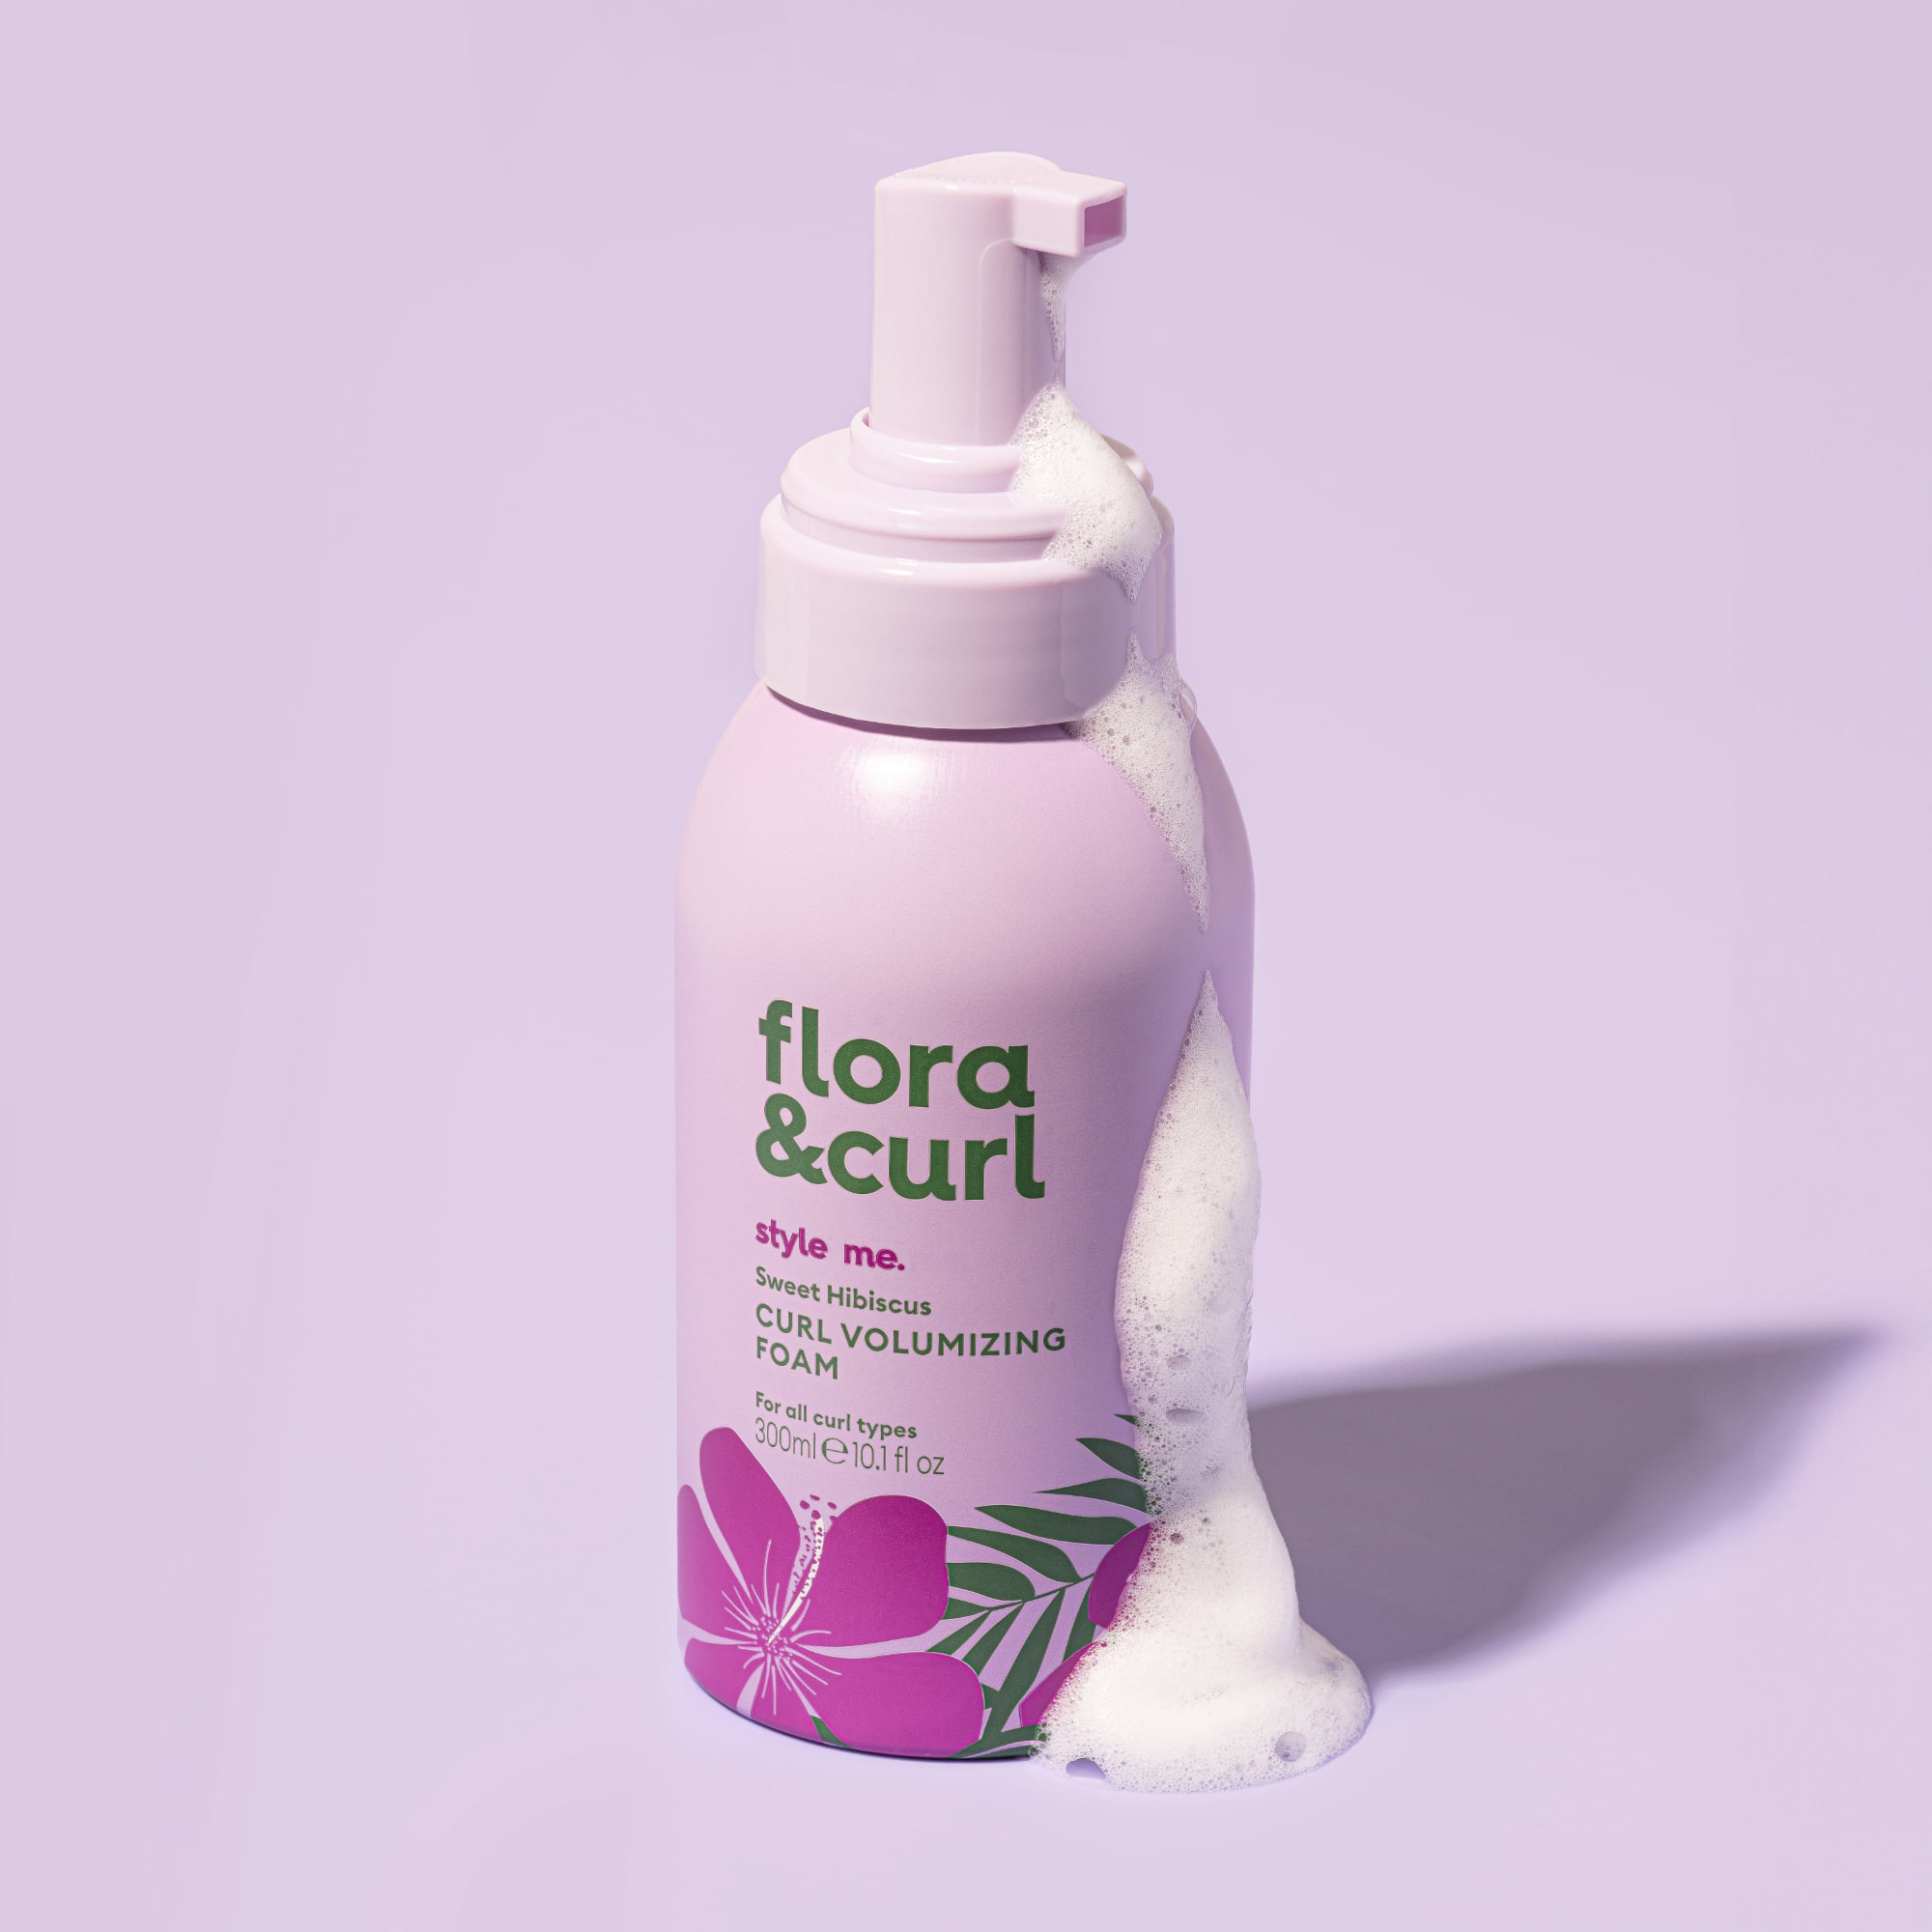 Flora & Curl Sweet Hibiscus Curl Volumizing Foam